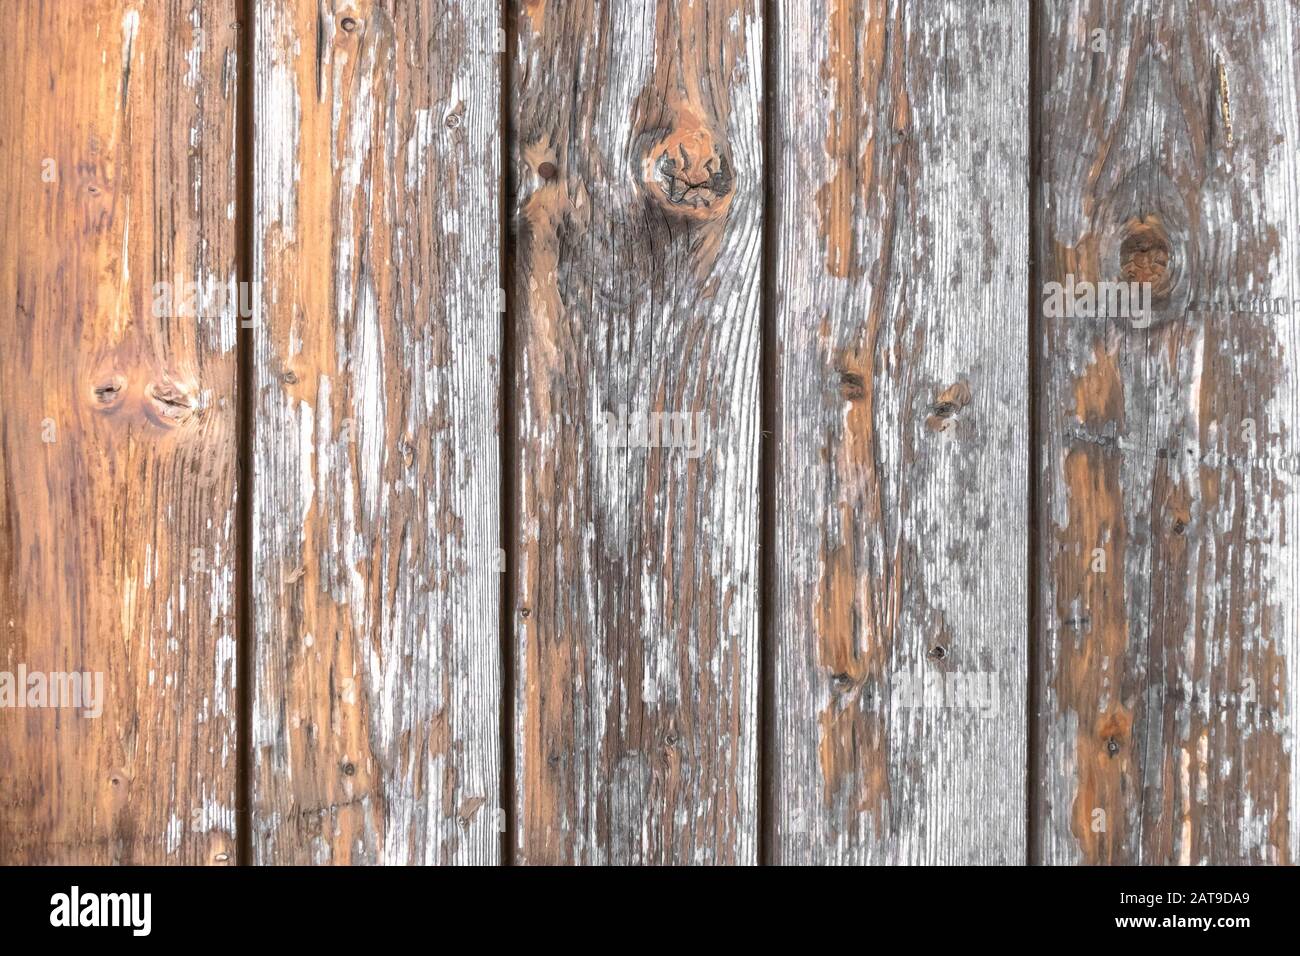 Fond en bois. Arrière-plan rustique en bois, rayé et endommagé par le temps. Banque D'Images